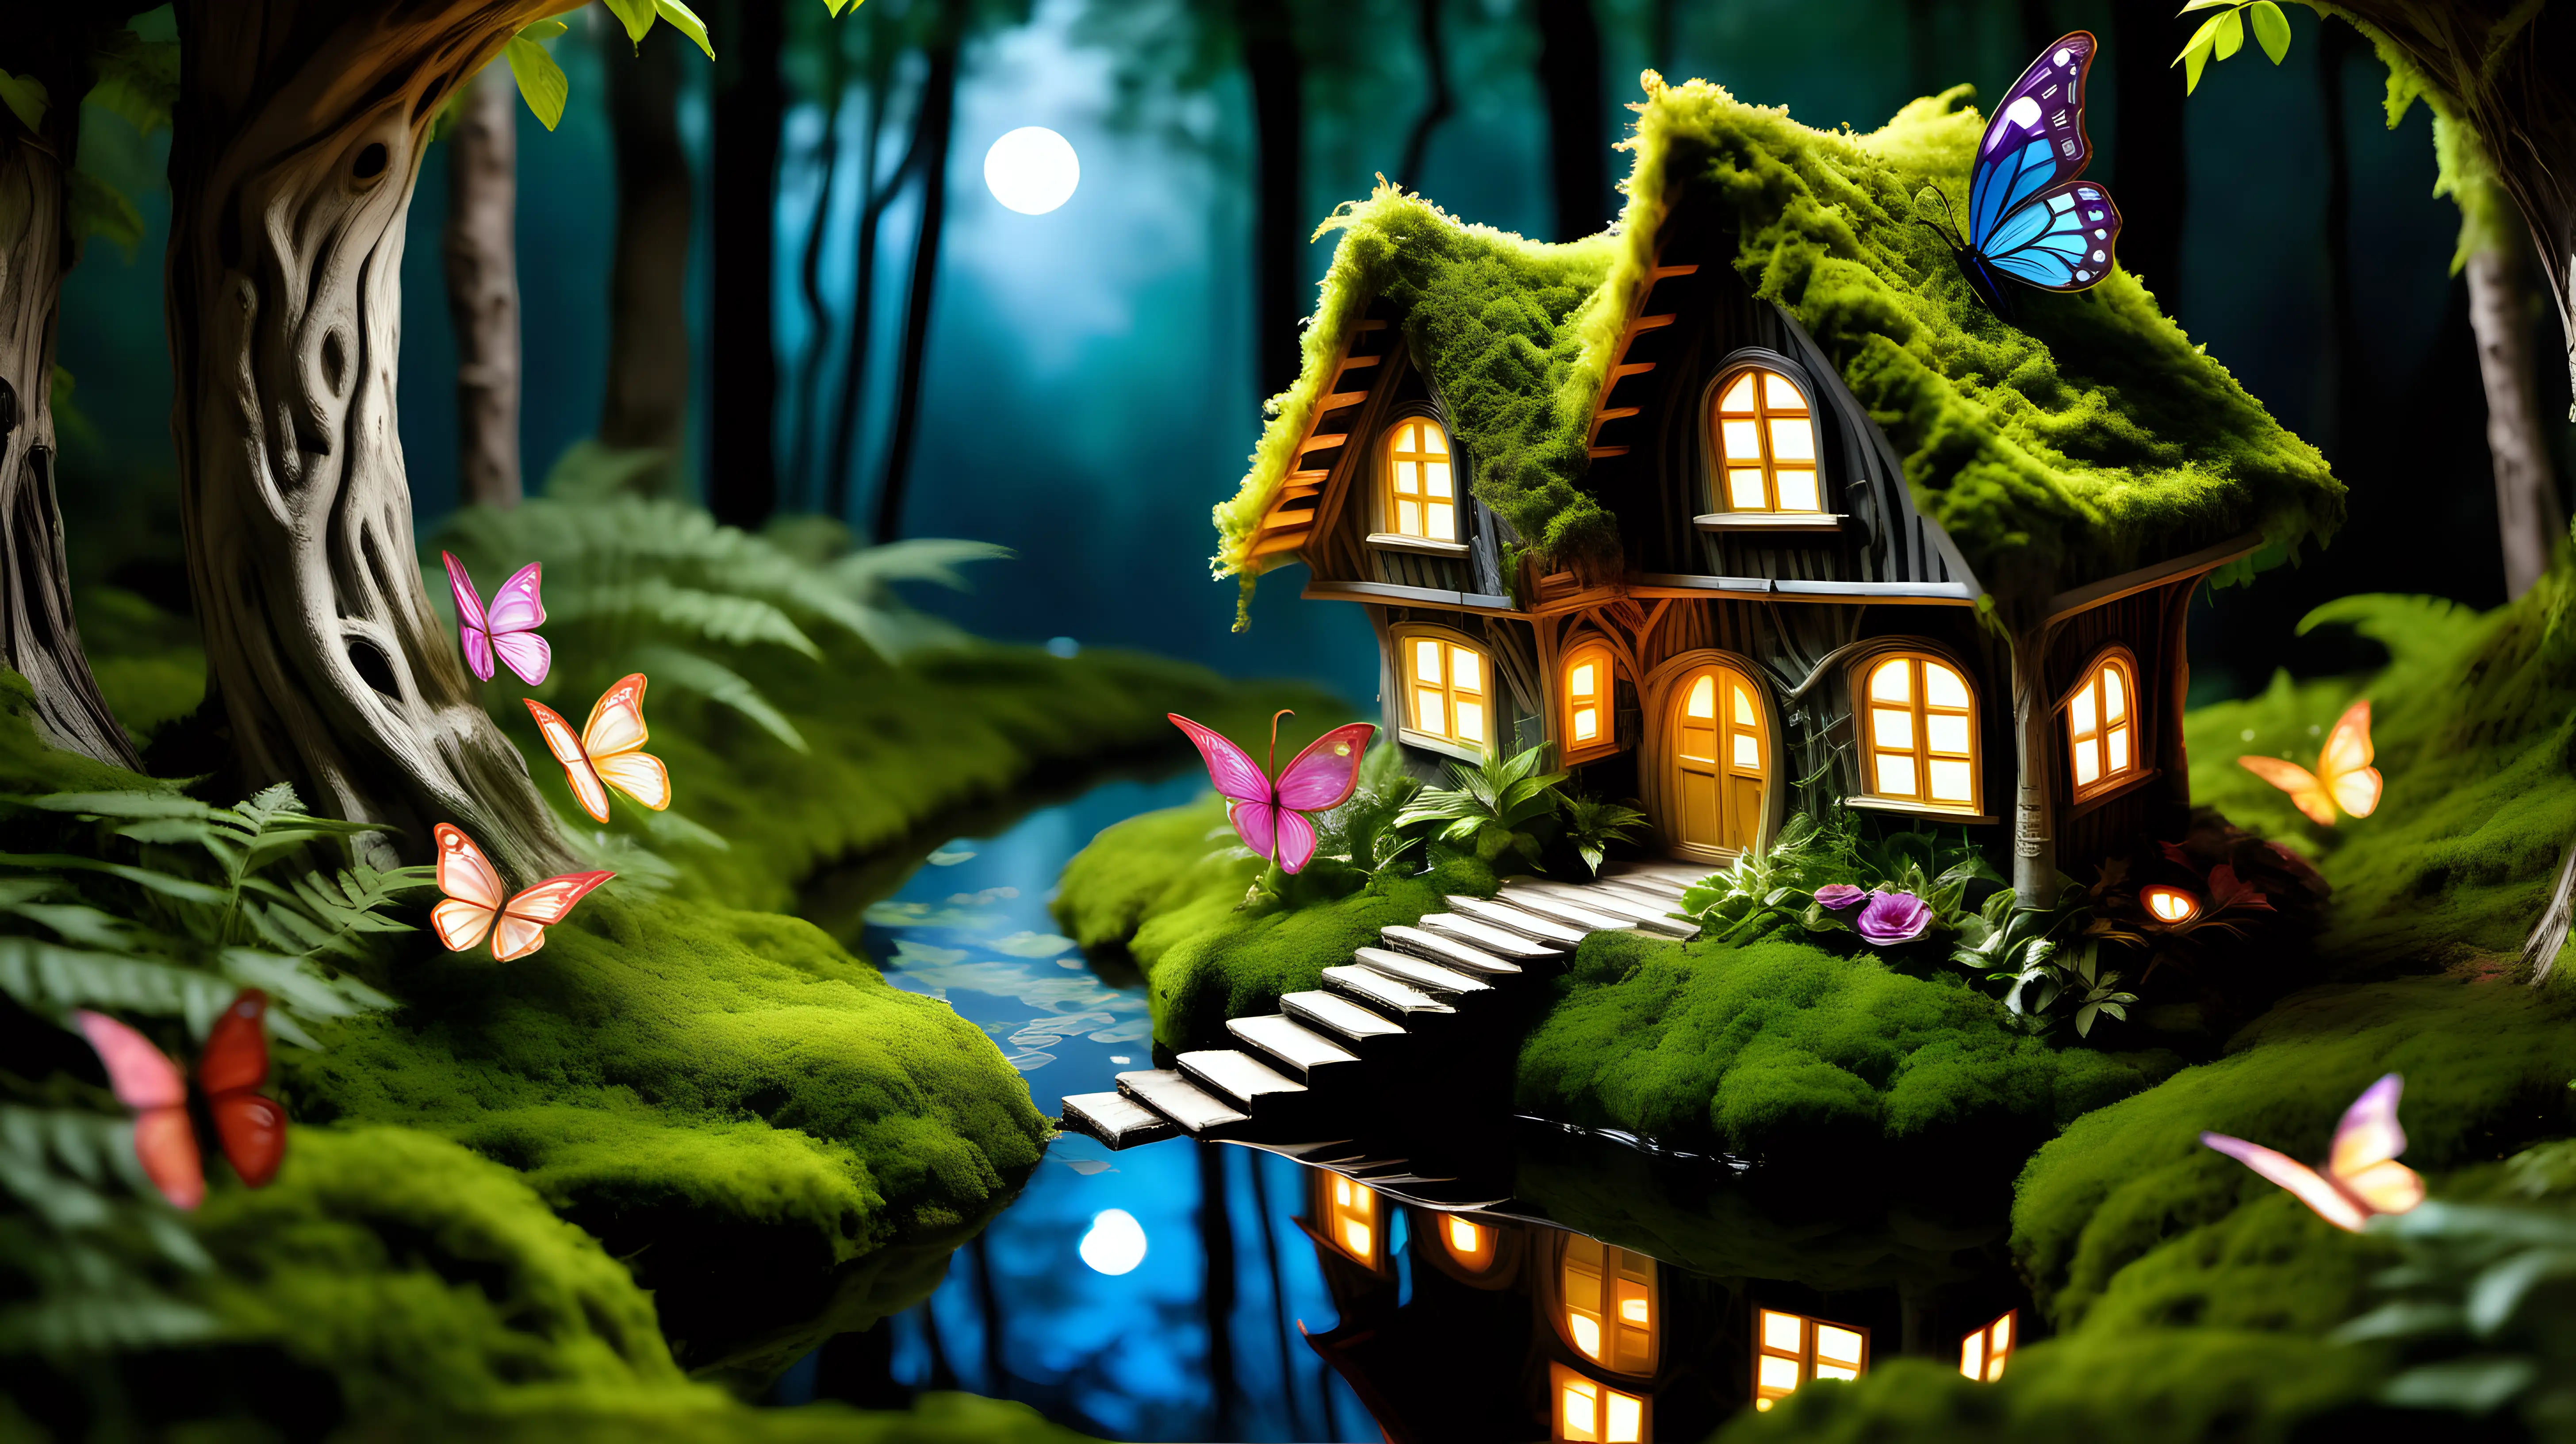 Enchanting Nighttime Fairytale Mystical Fairy House Amidst Woodland Sanctuary